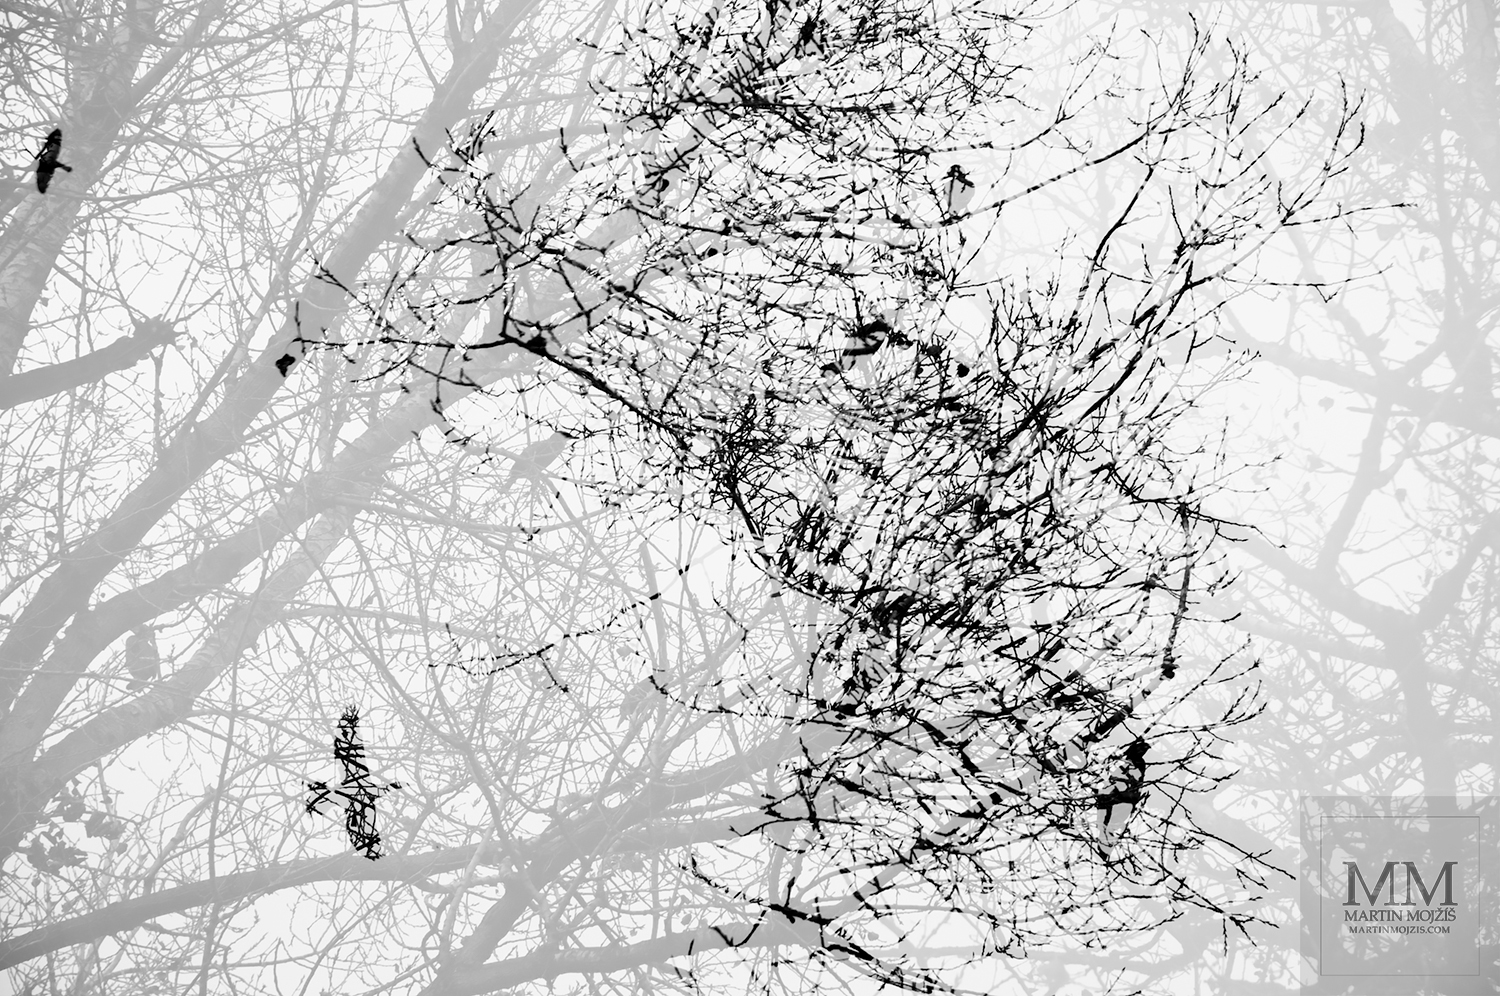 Prolnuté větve stromů a ptáci. Umělecká fotografie Martina Mojžíše s názvem DO JINÝCH SVĚTŮ I.